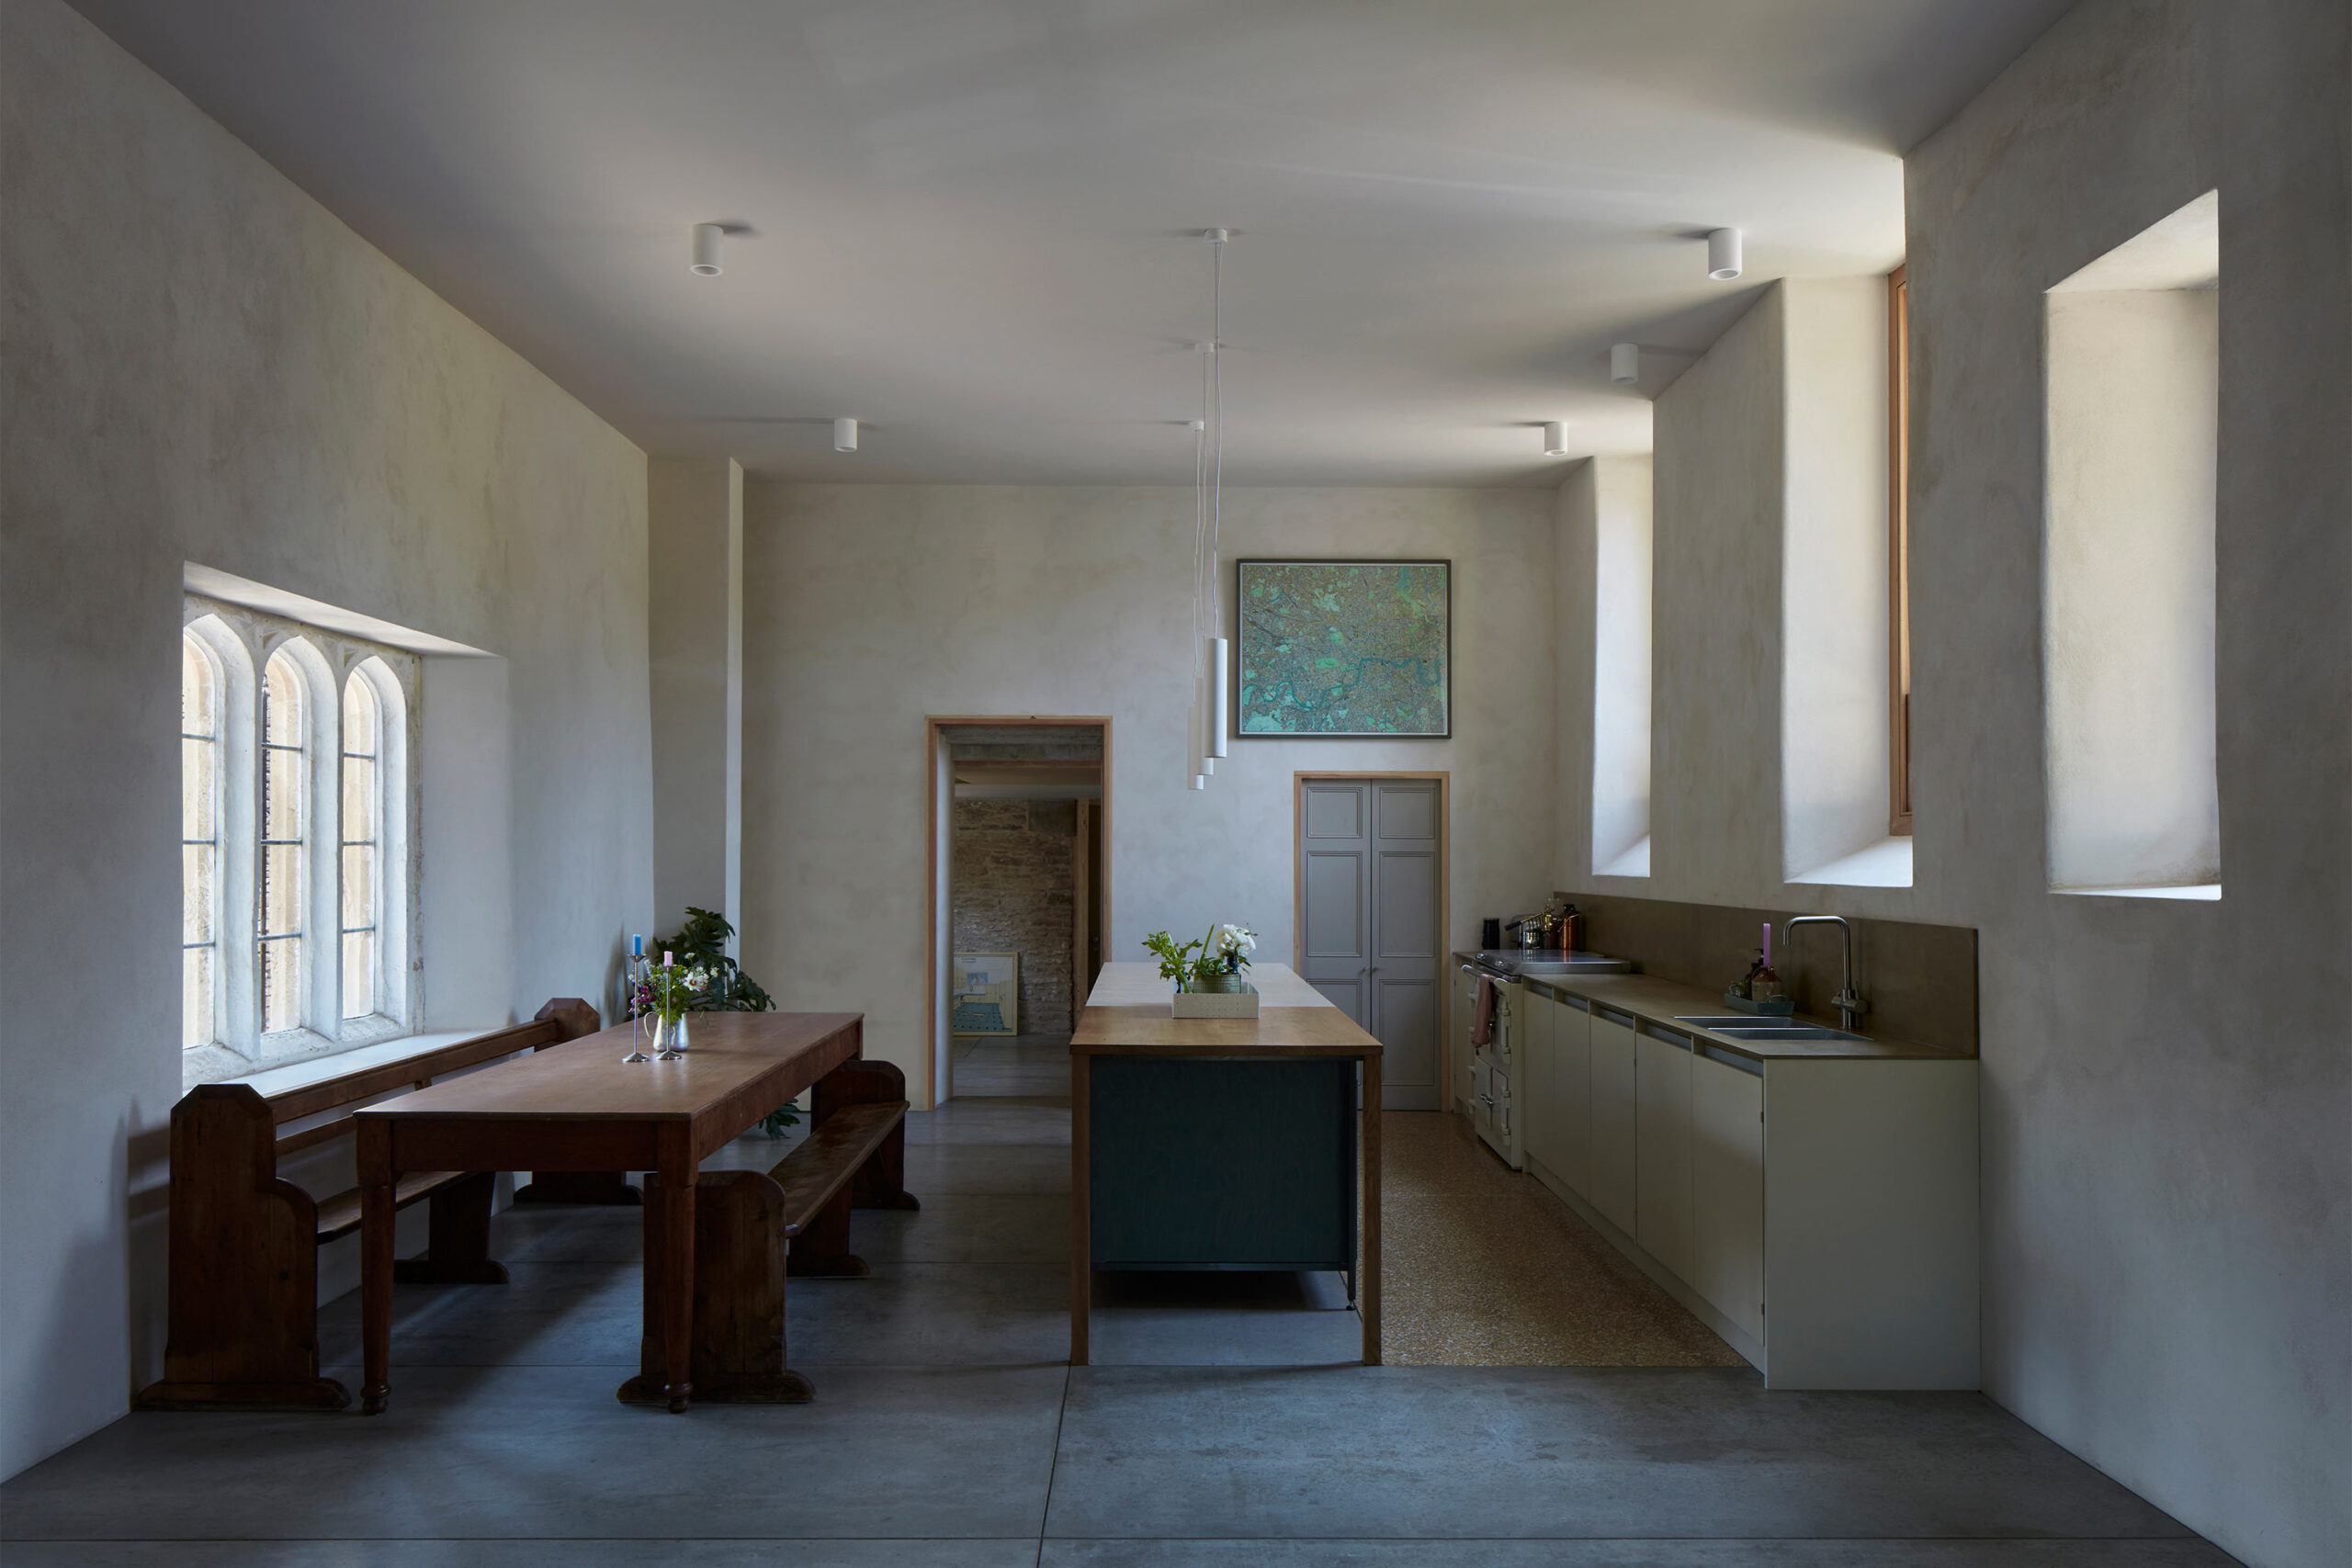 La cucina e la sala da pranzo nella hall vincolata (Grado II) per il suo valore architettonico.